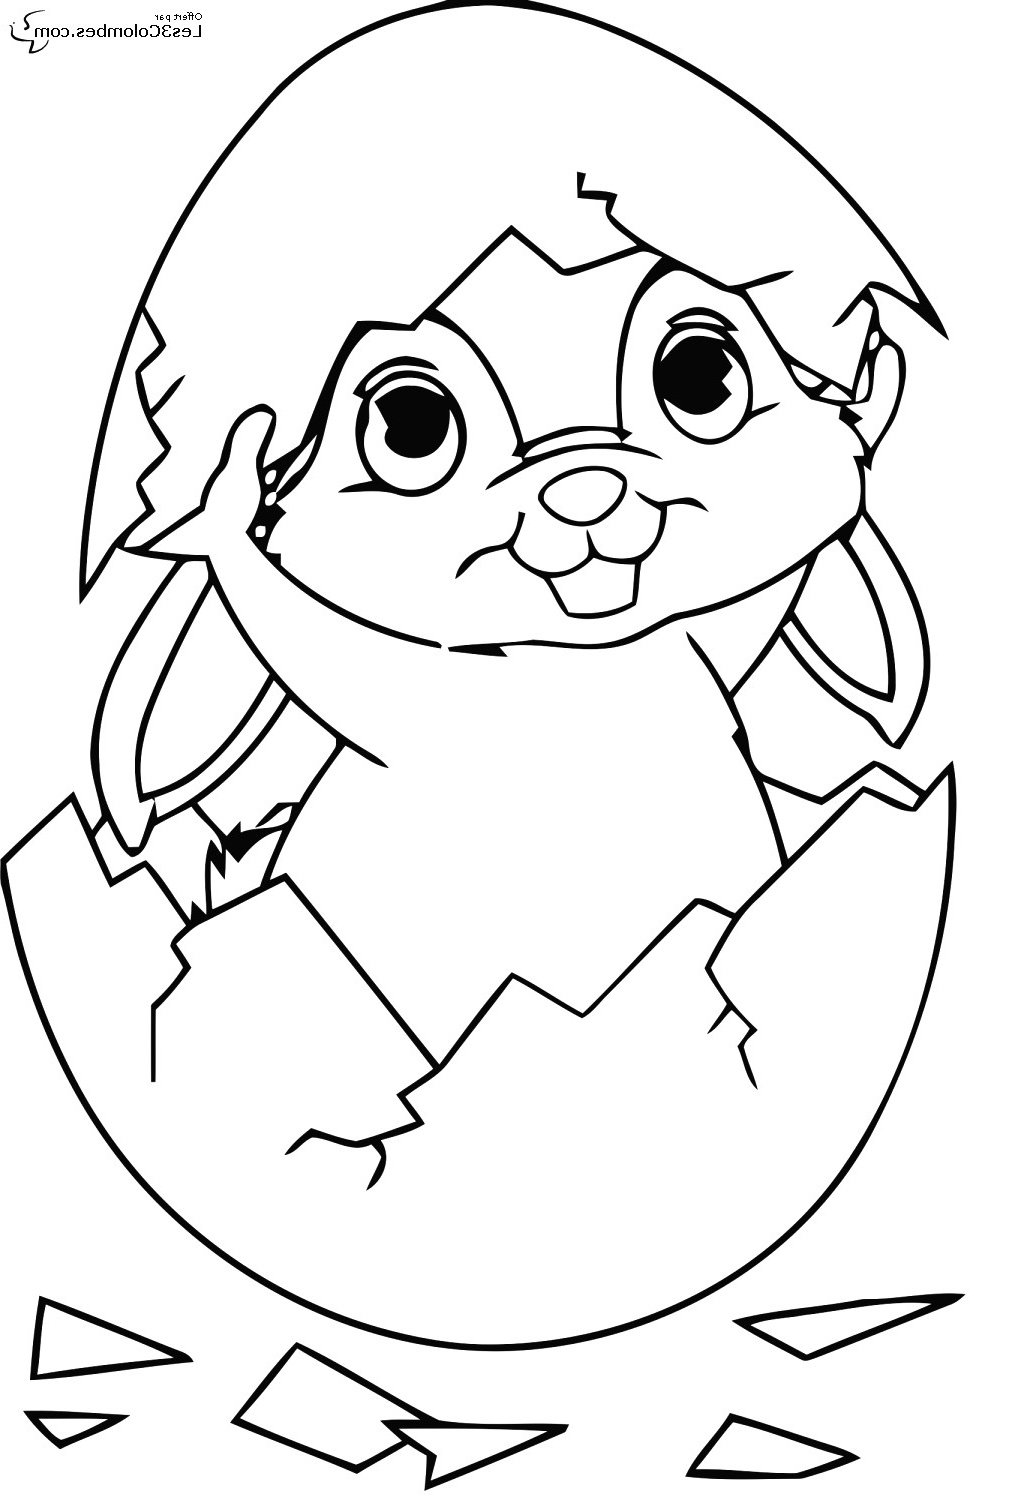 dessin lapin simple mexicaindessin avec dessin lapin facile etape par etape ment dessiner un lapin avec riguarda dessin lapin simple et dessin de lapin facile a faire 15 736x1570px dessin